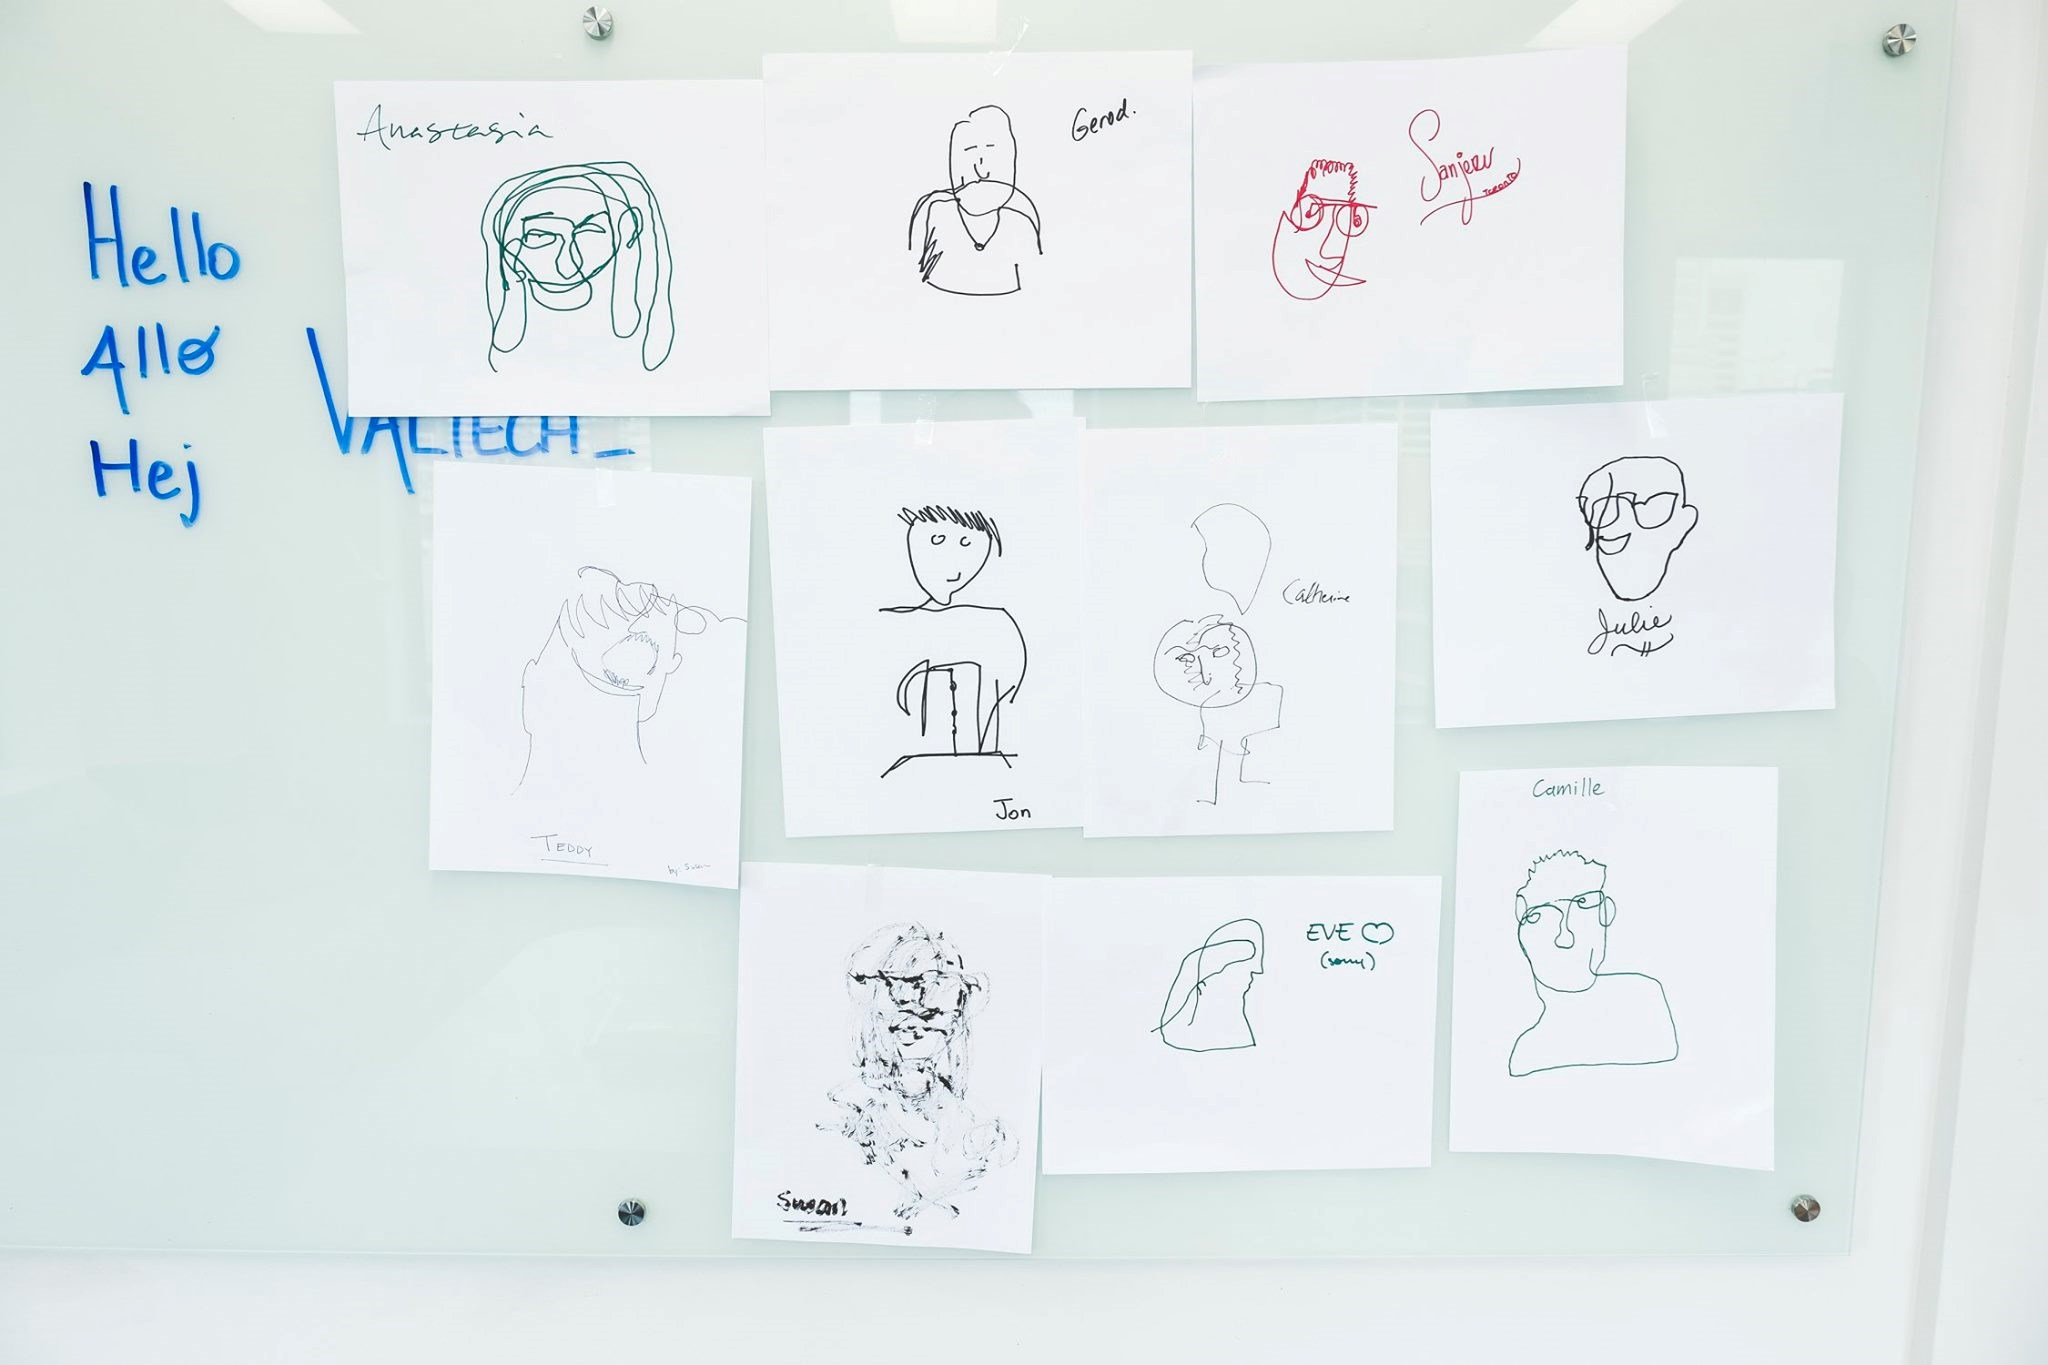 image of coworker drawings